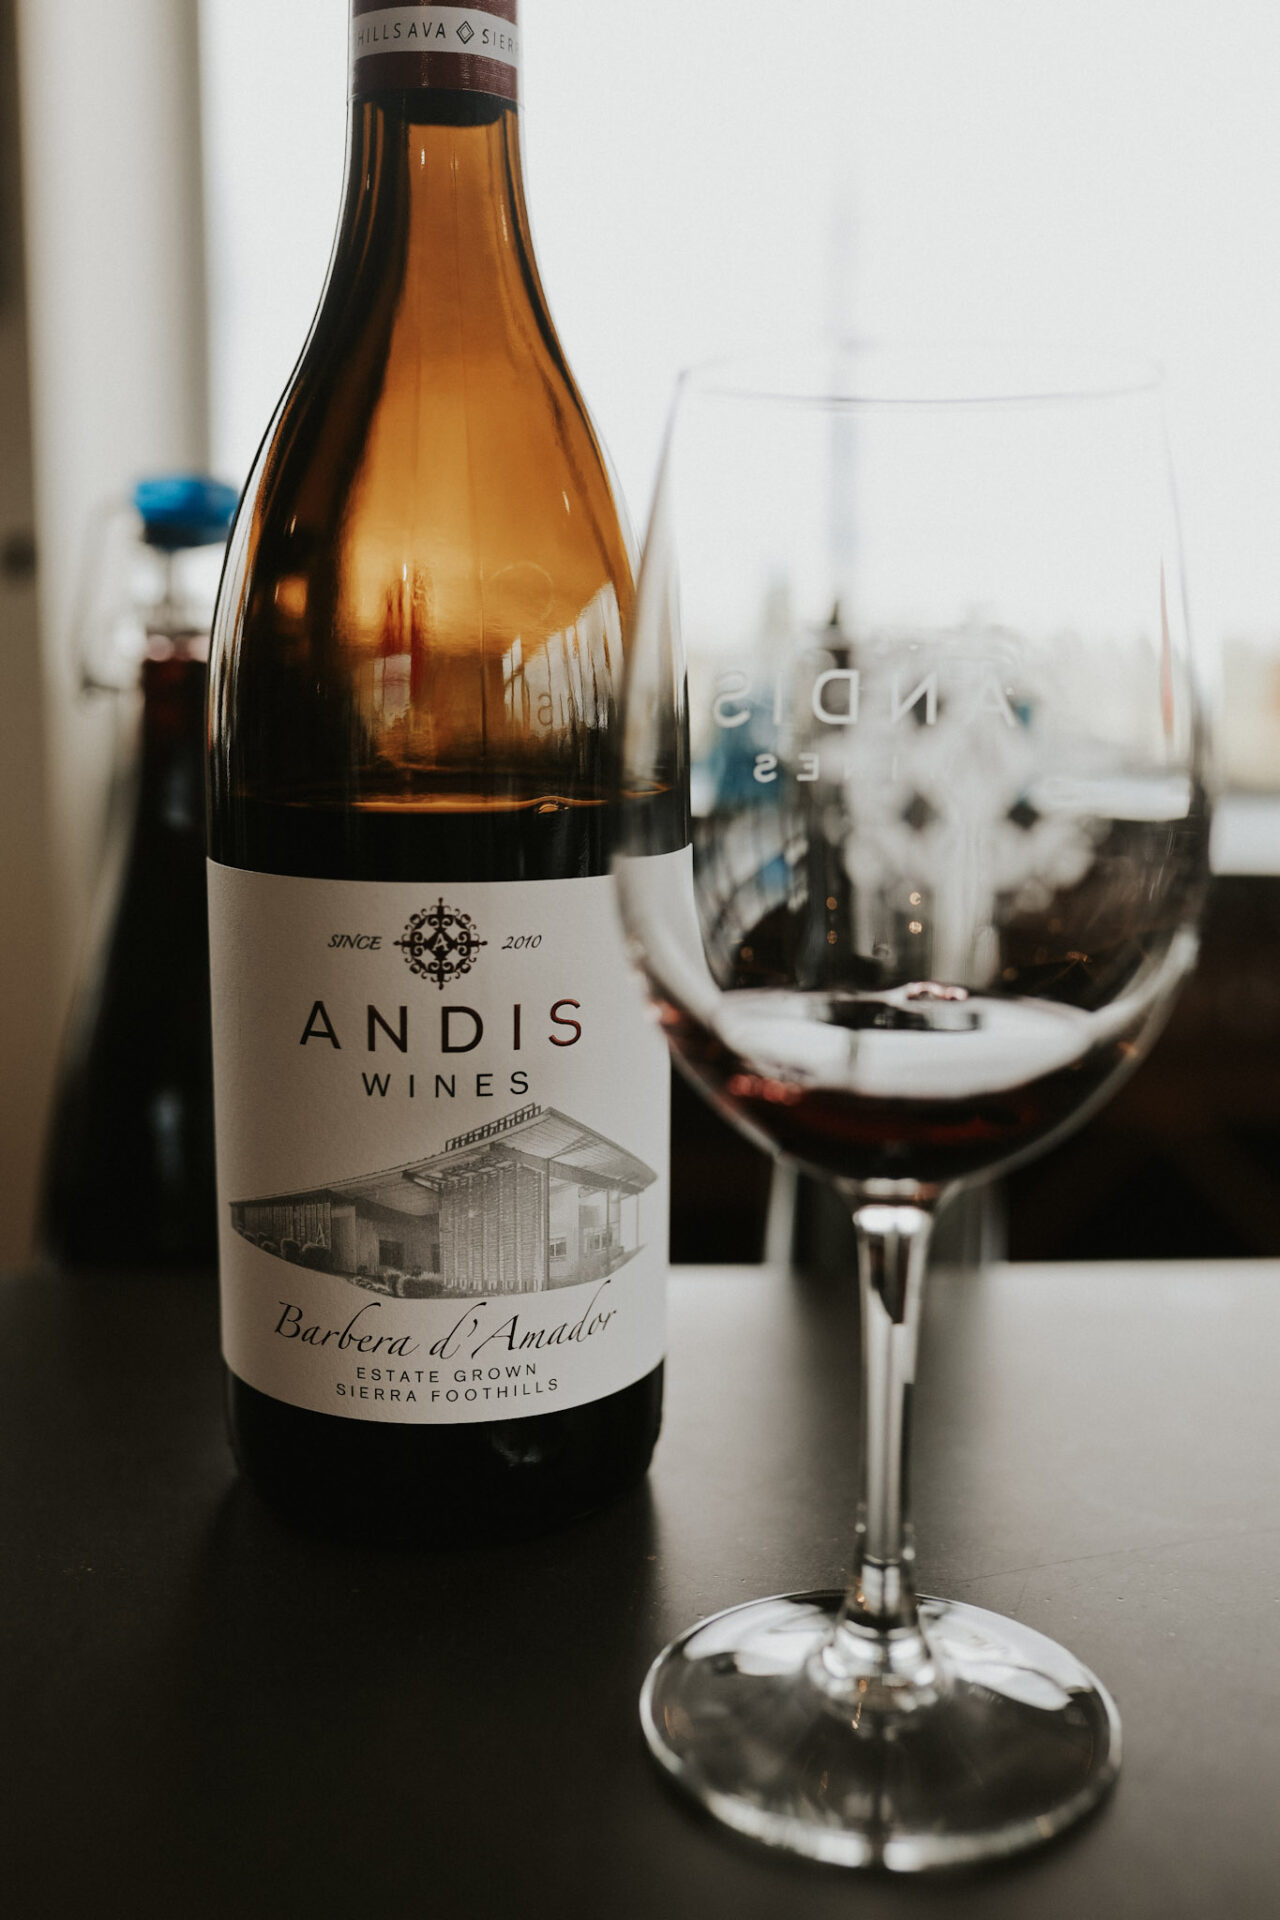 Andis wine bottle - Amador County winery